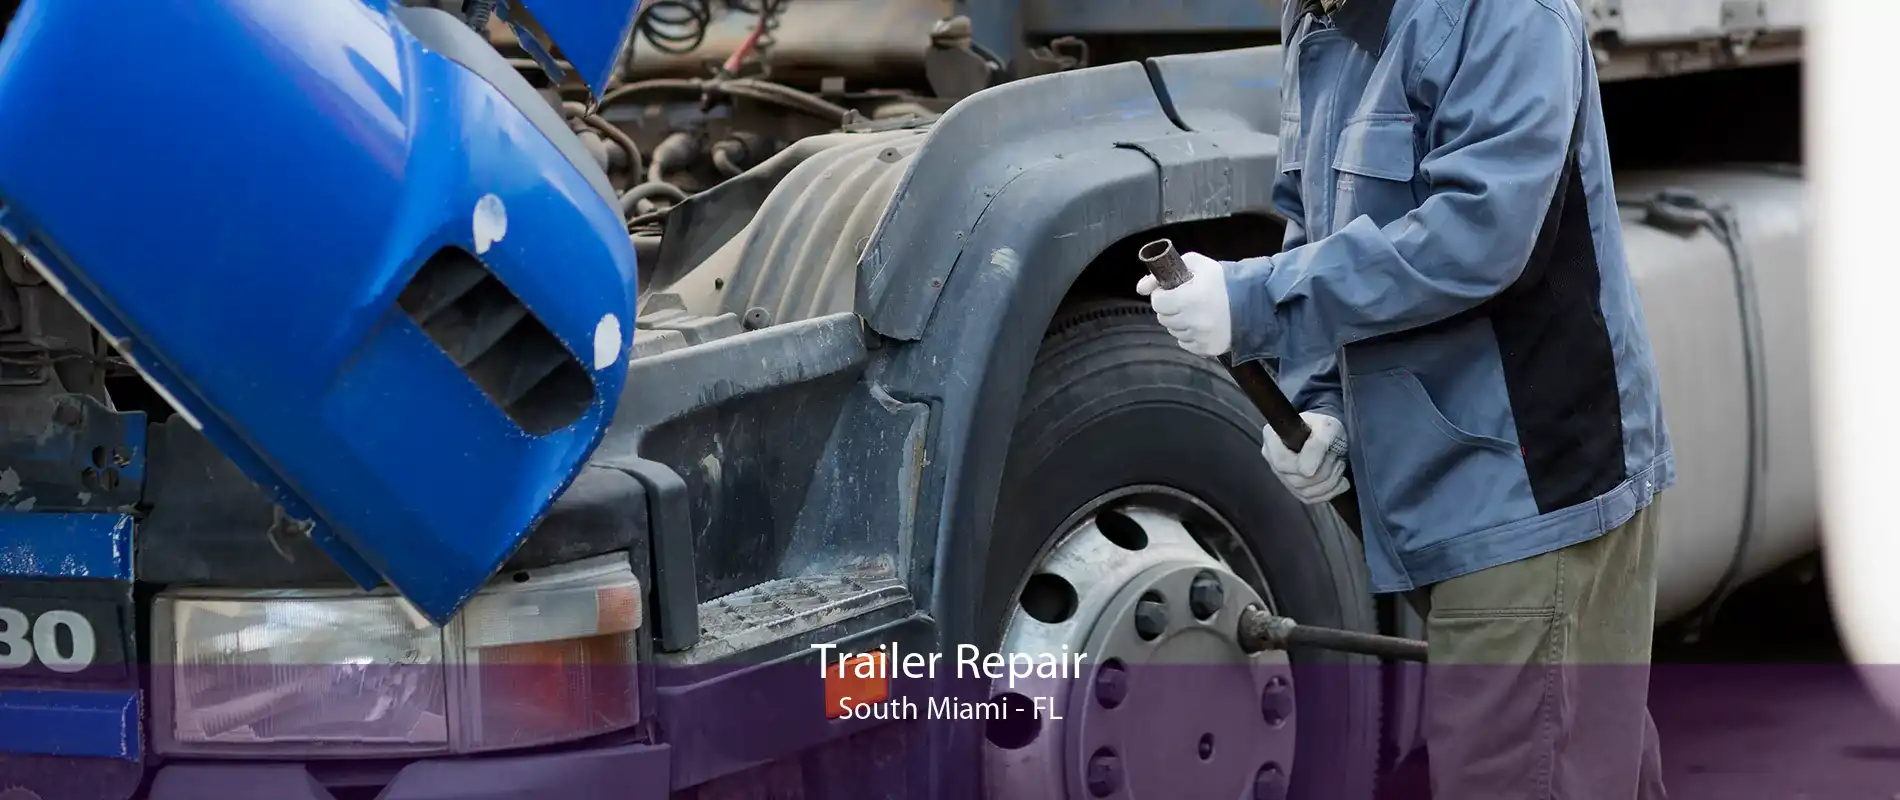 Trailer Repair South Miami - FL